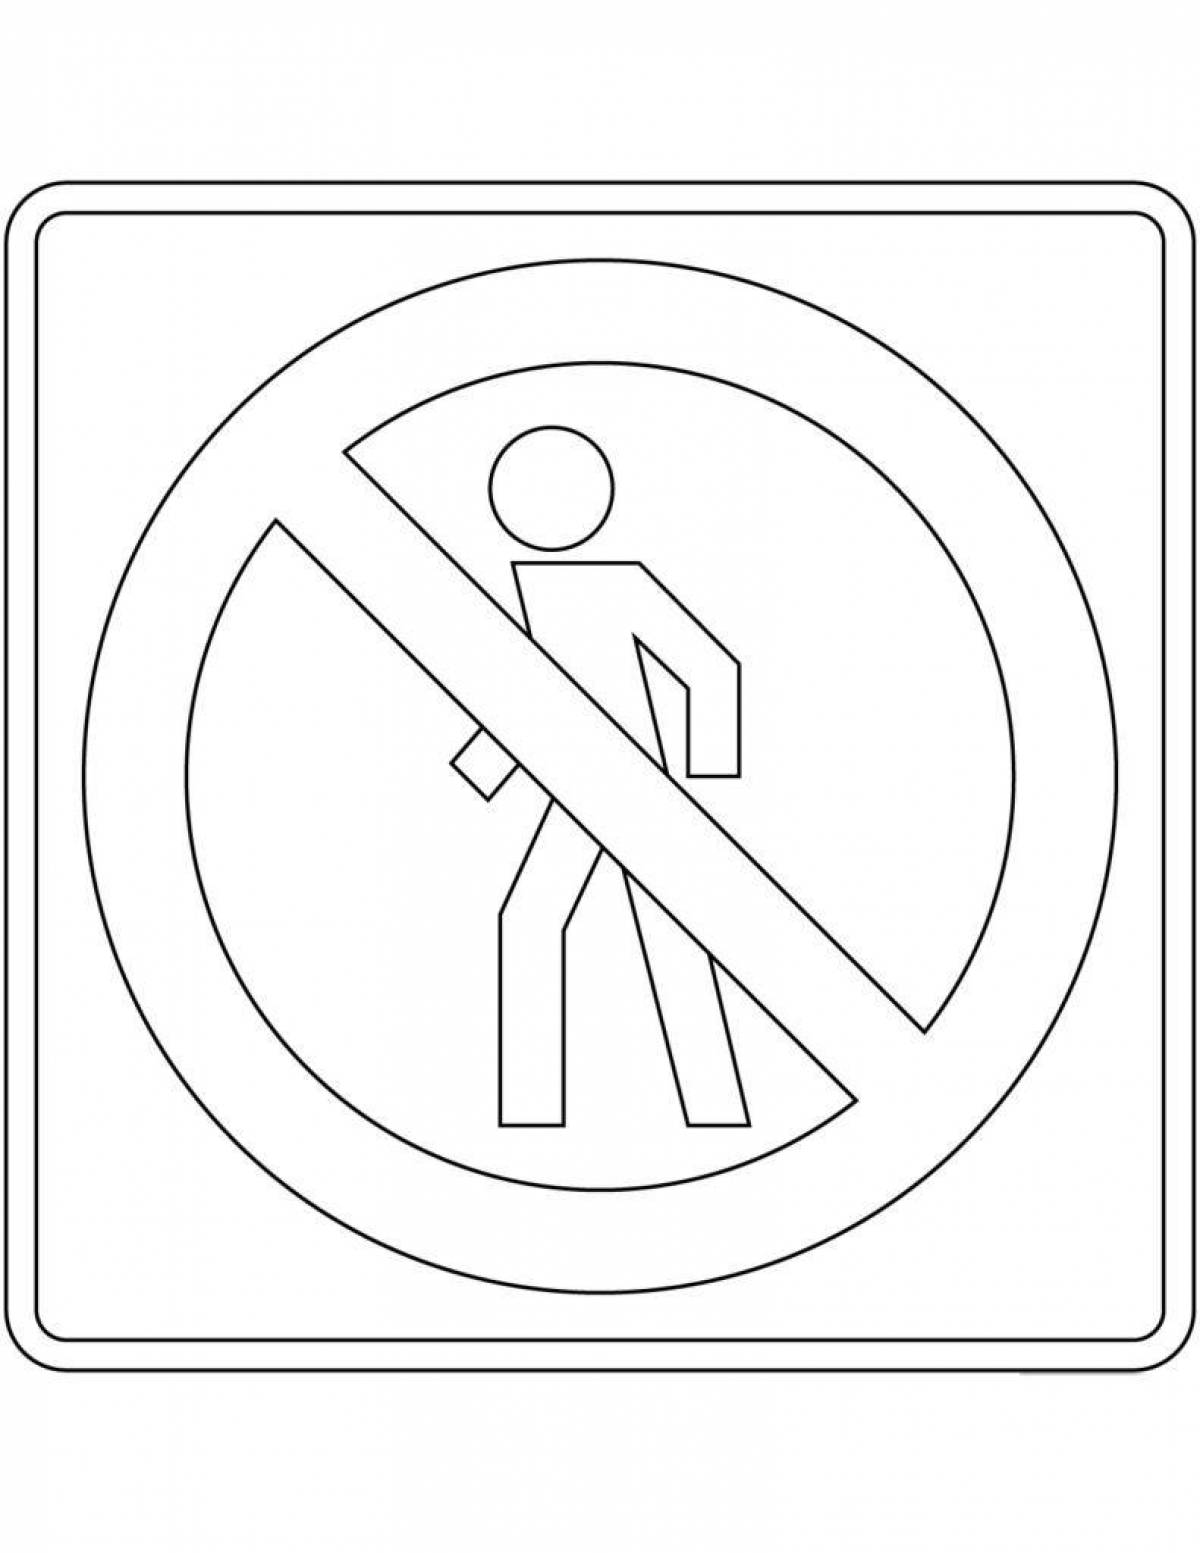 Joy road sign for pedestrians